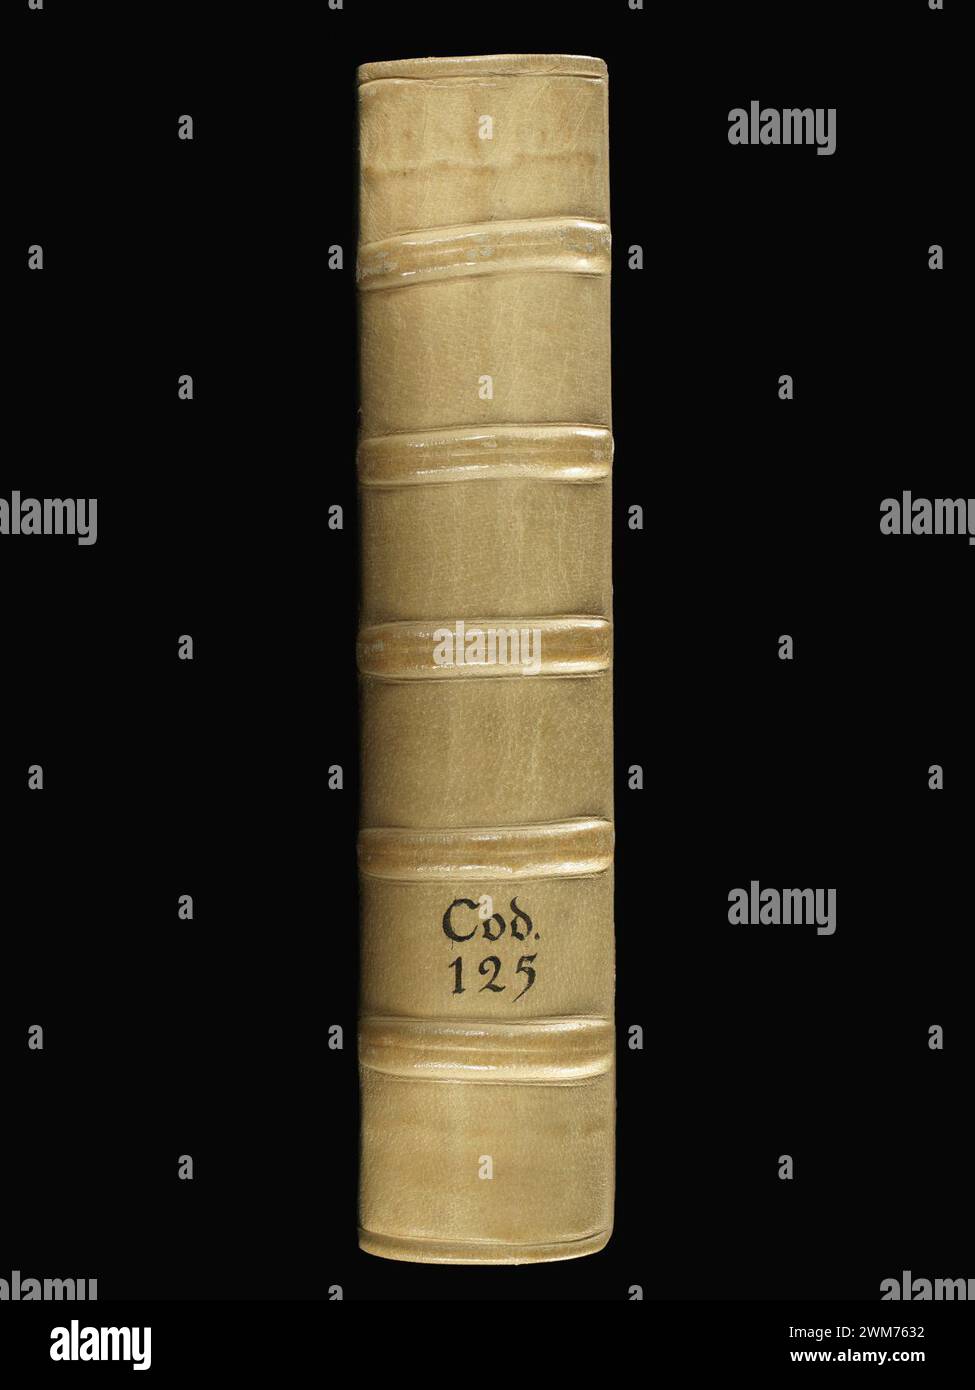 Csb. 125, Spine: Marco Polo Devisement du Monde, Jean de Mandeville Voyages, Jean le Long d'Ypres Récits de Voyages. Stockfoto